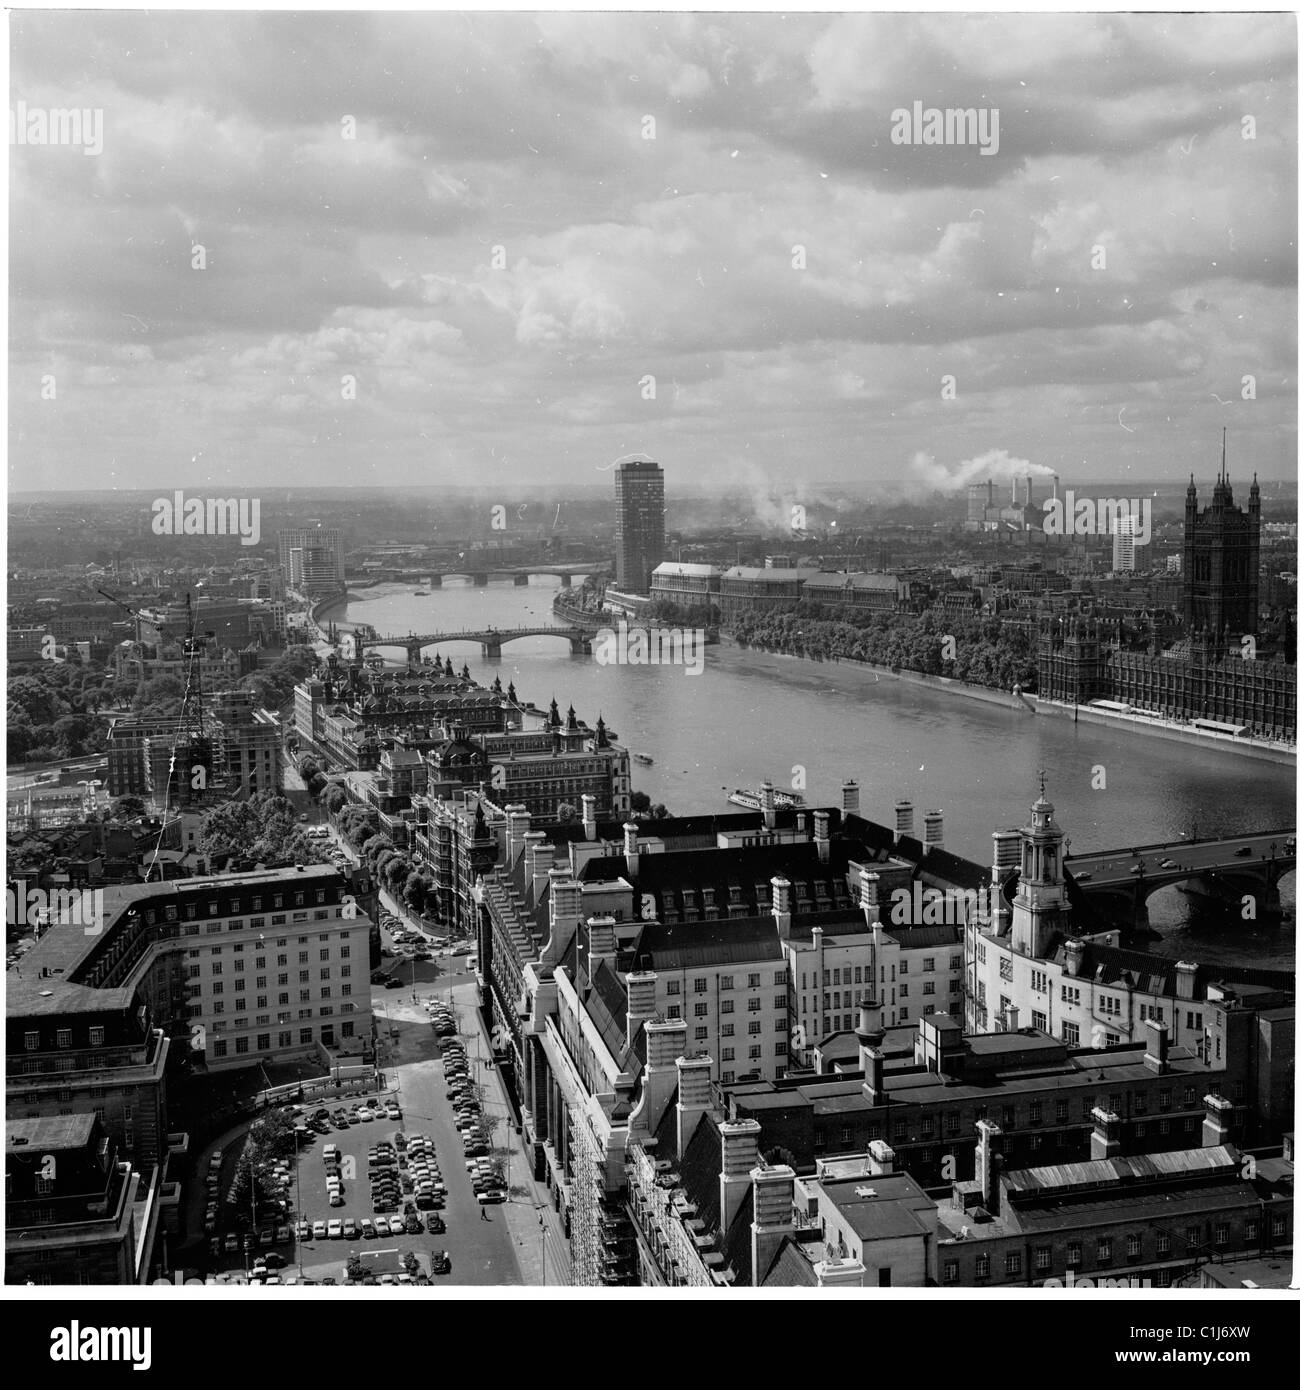 Années 1960, vue aérienne de la Tamise depuis County Hall, montrant la tour Victoria du Palais de Westminster et Millbank, un bloc de tours moderne. Banque D'Images